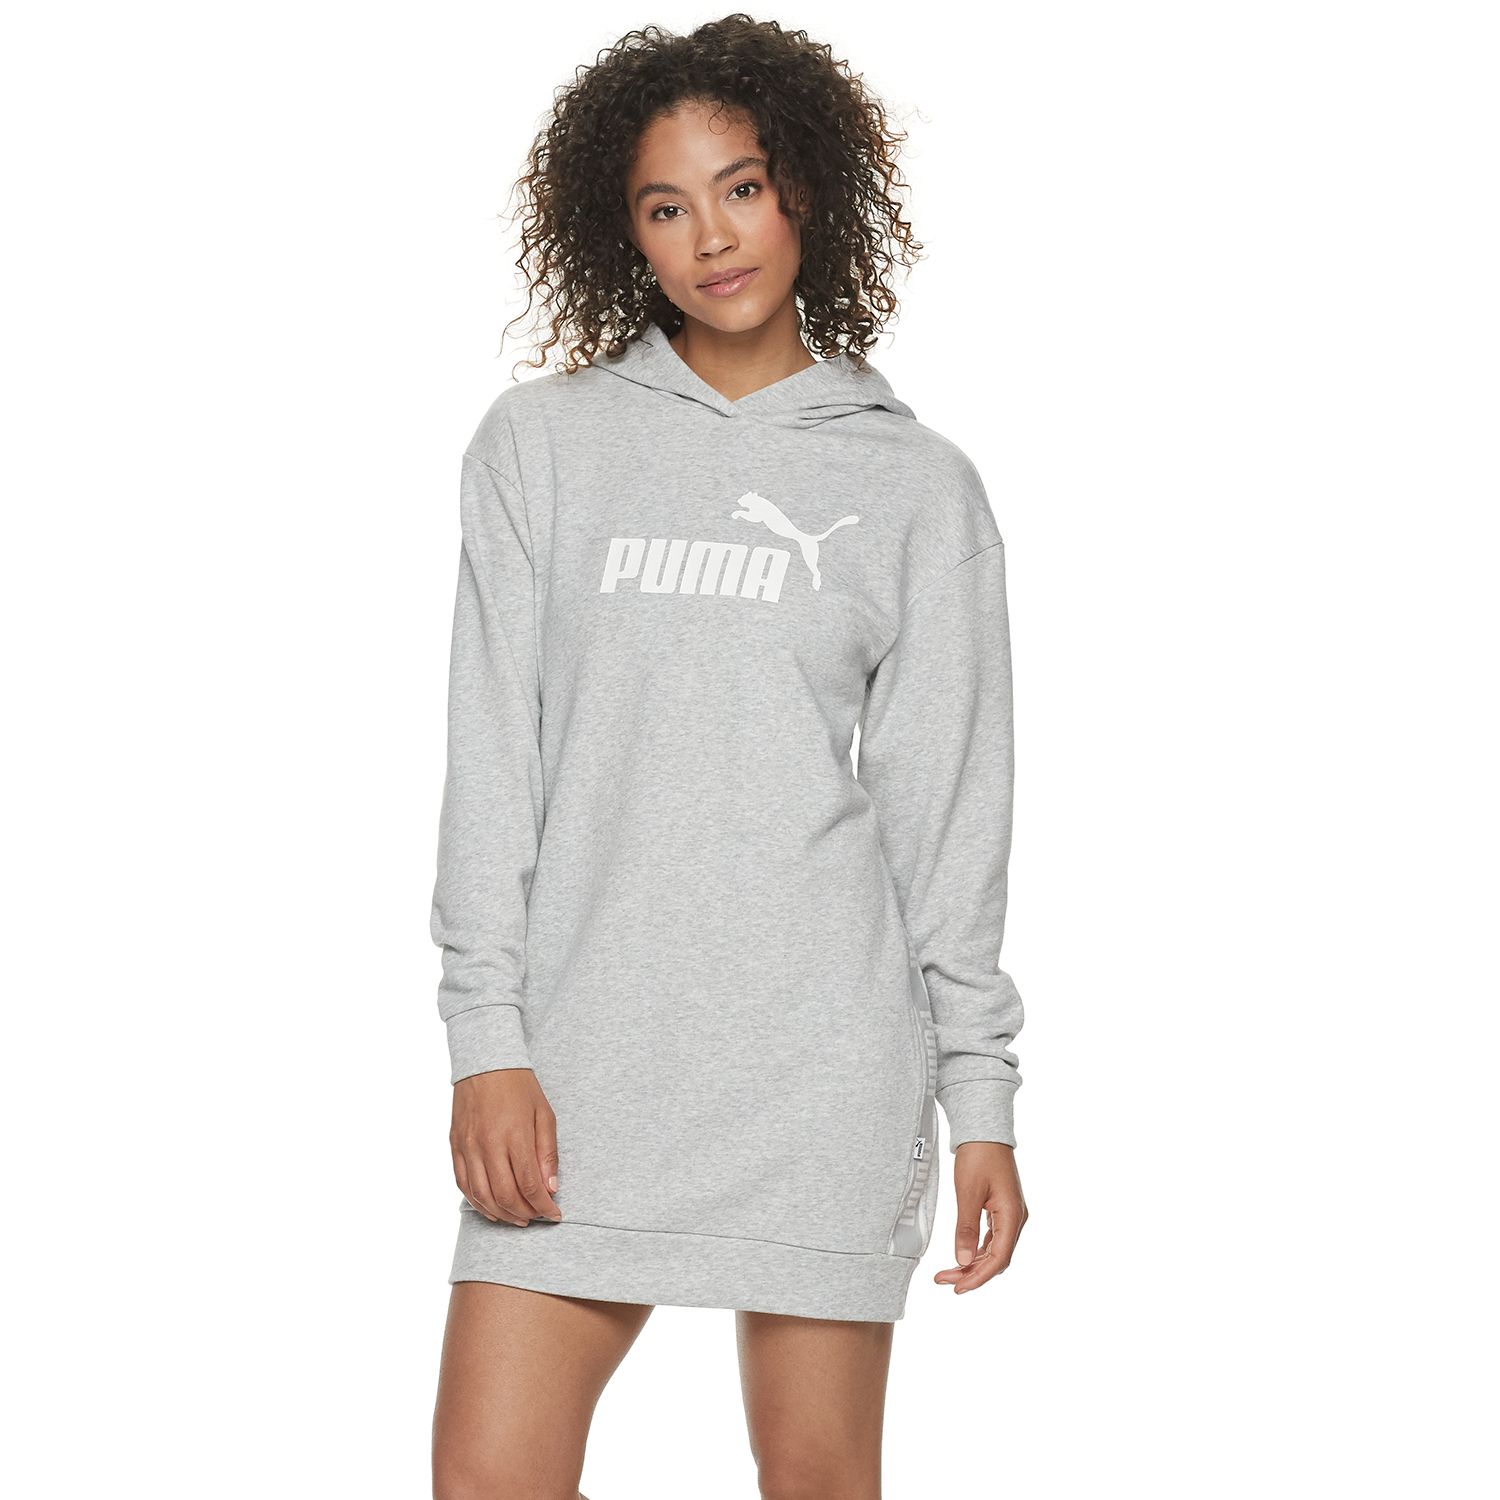 Women's PUMA Amplified Sweatshirt Dress